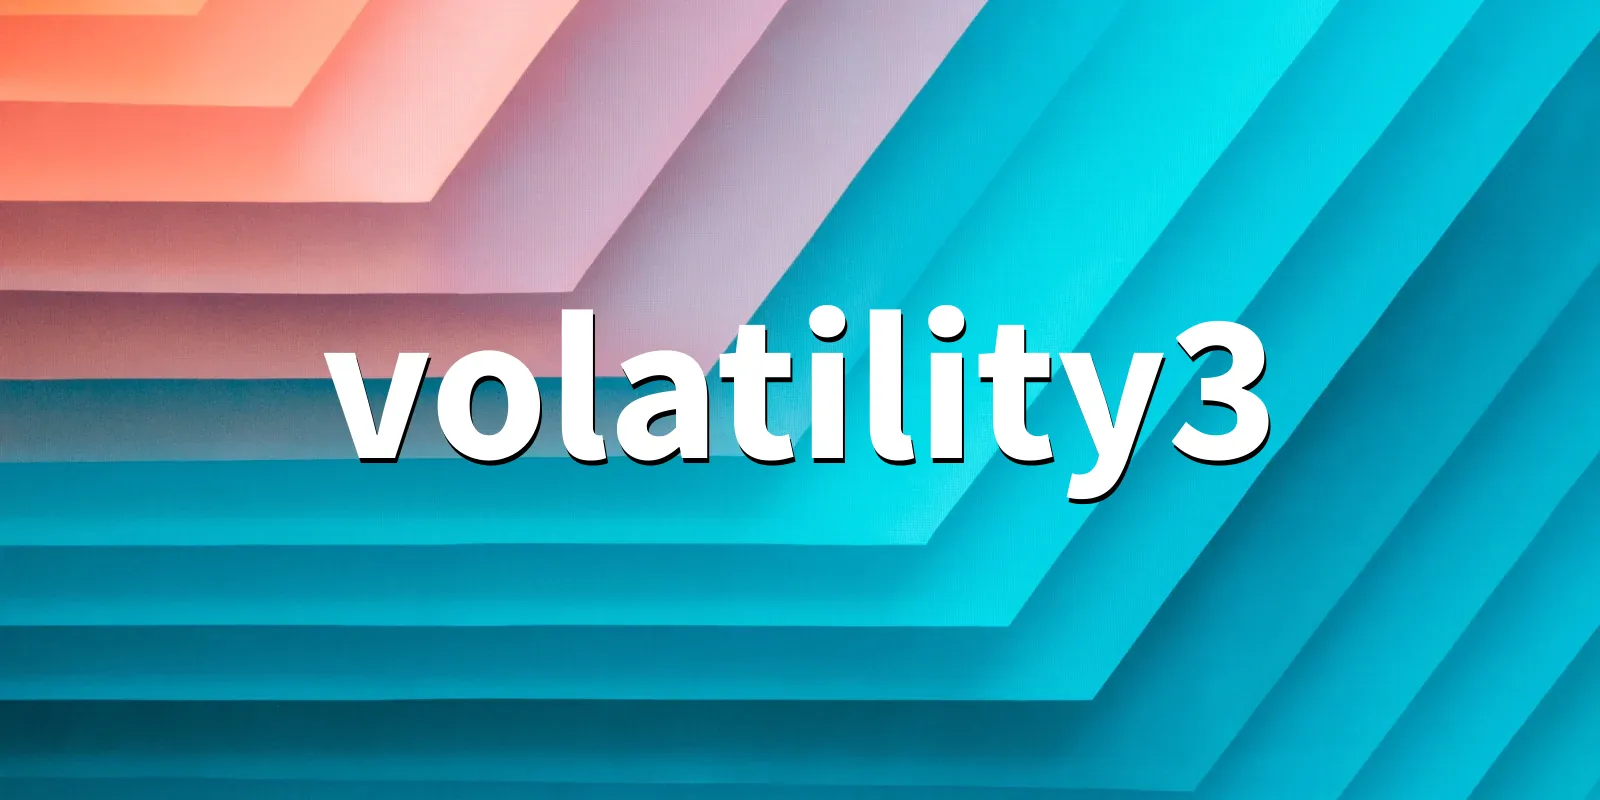 /pkg/v/volatility3/volatility3-banner.webp